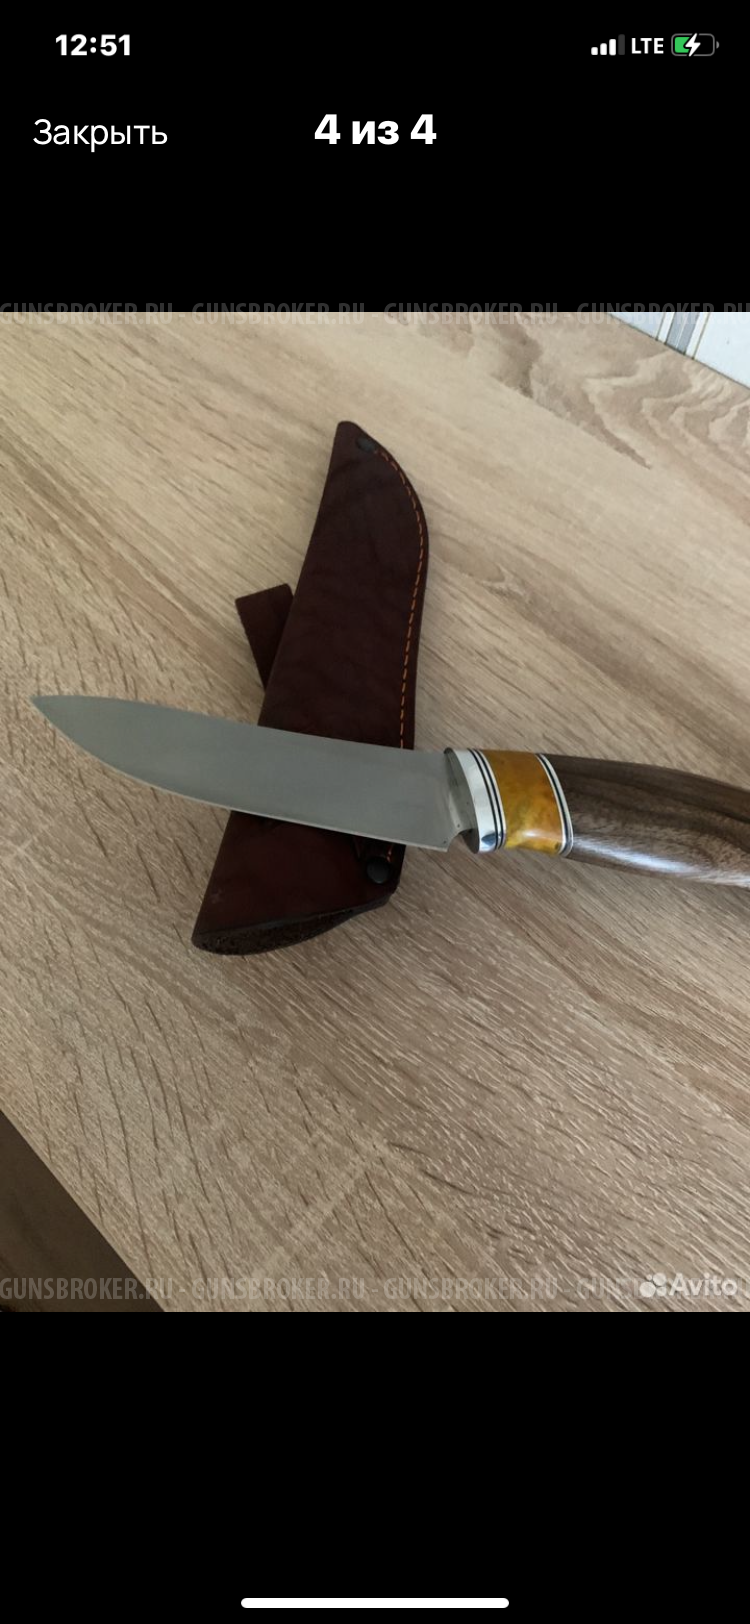 Нож СКИНЕР из 9ХС кованый, вороненый.